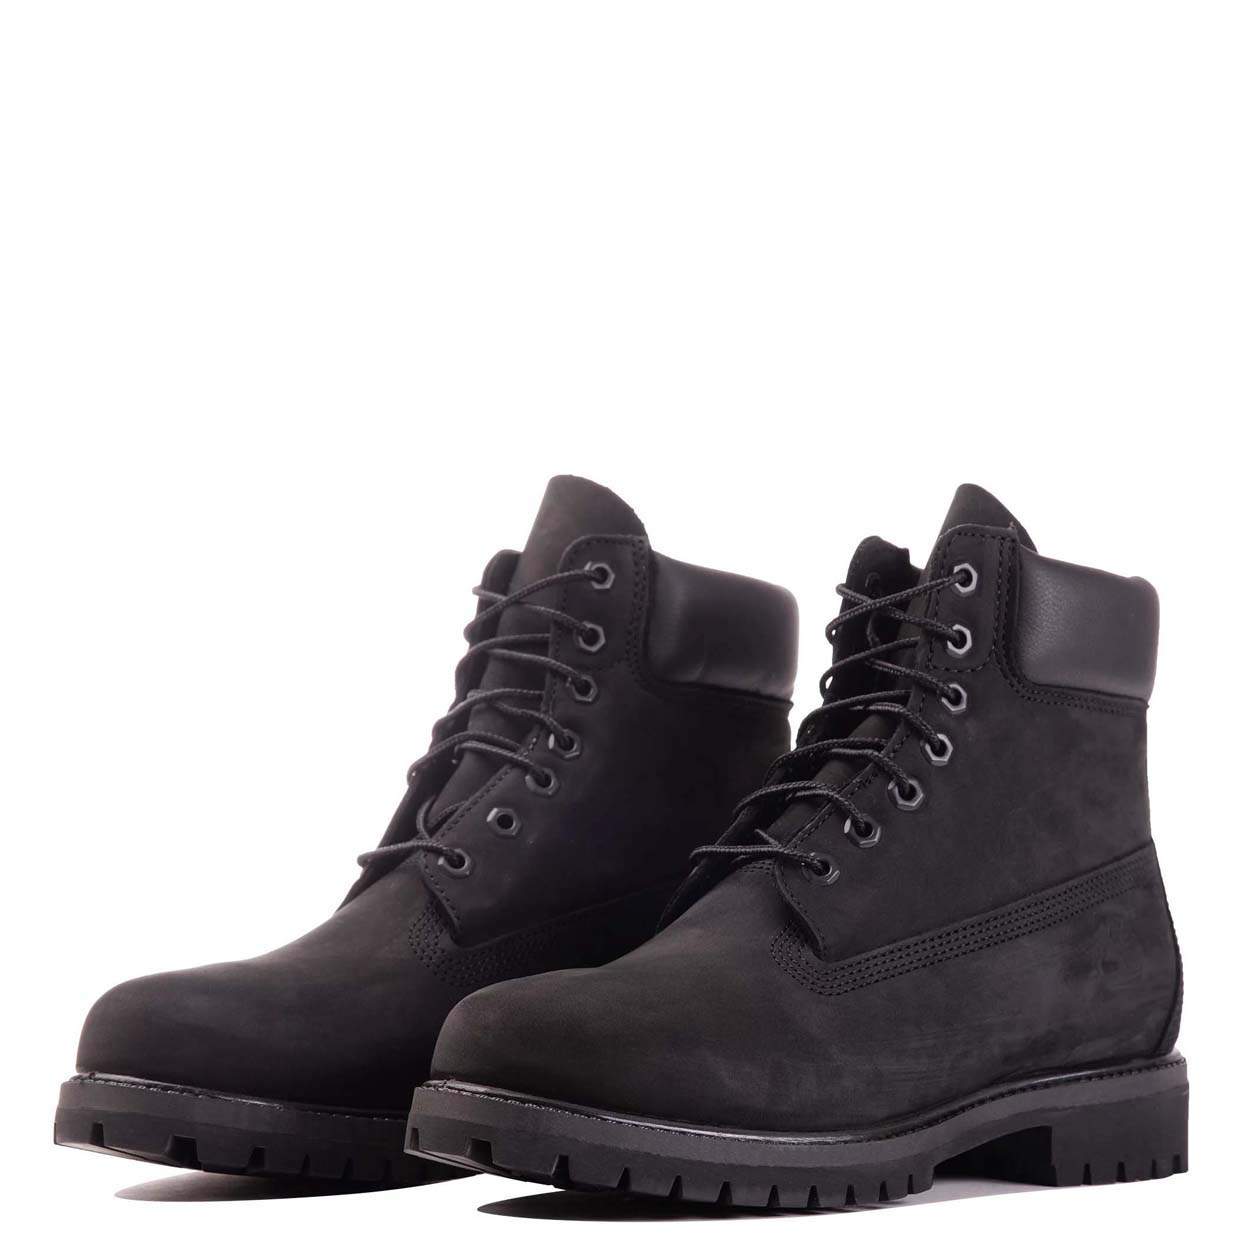 Ботинки мужские Timberland 6 Inch Premium Boot Waterproof черные 11 US -купить в Москве, цены на Мегамаркет